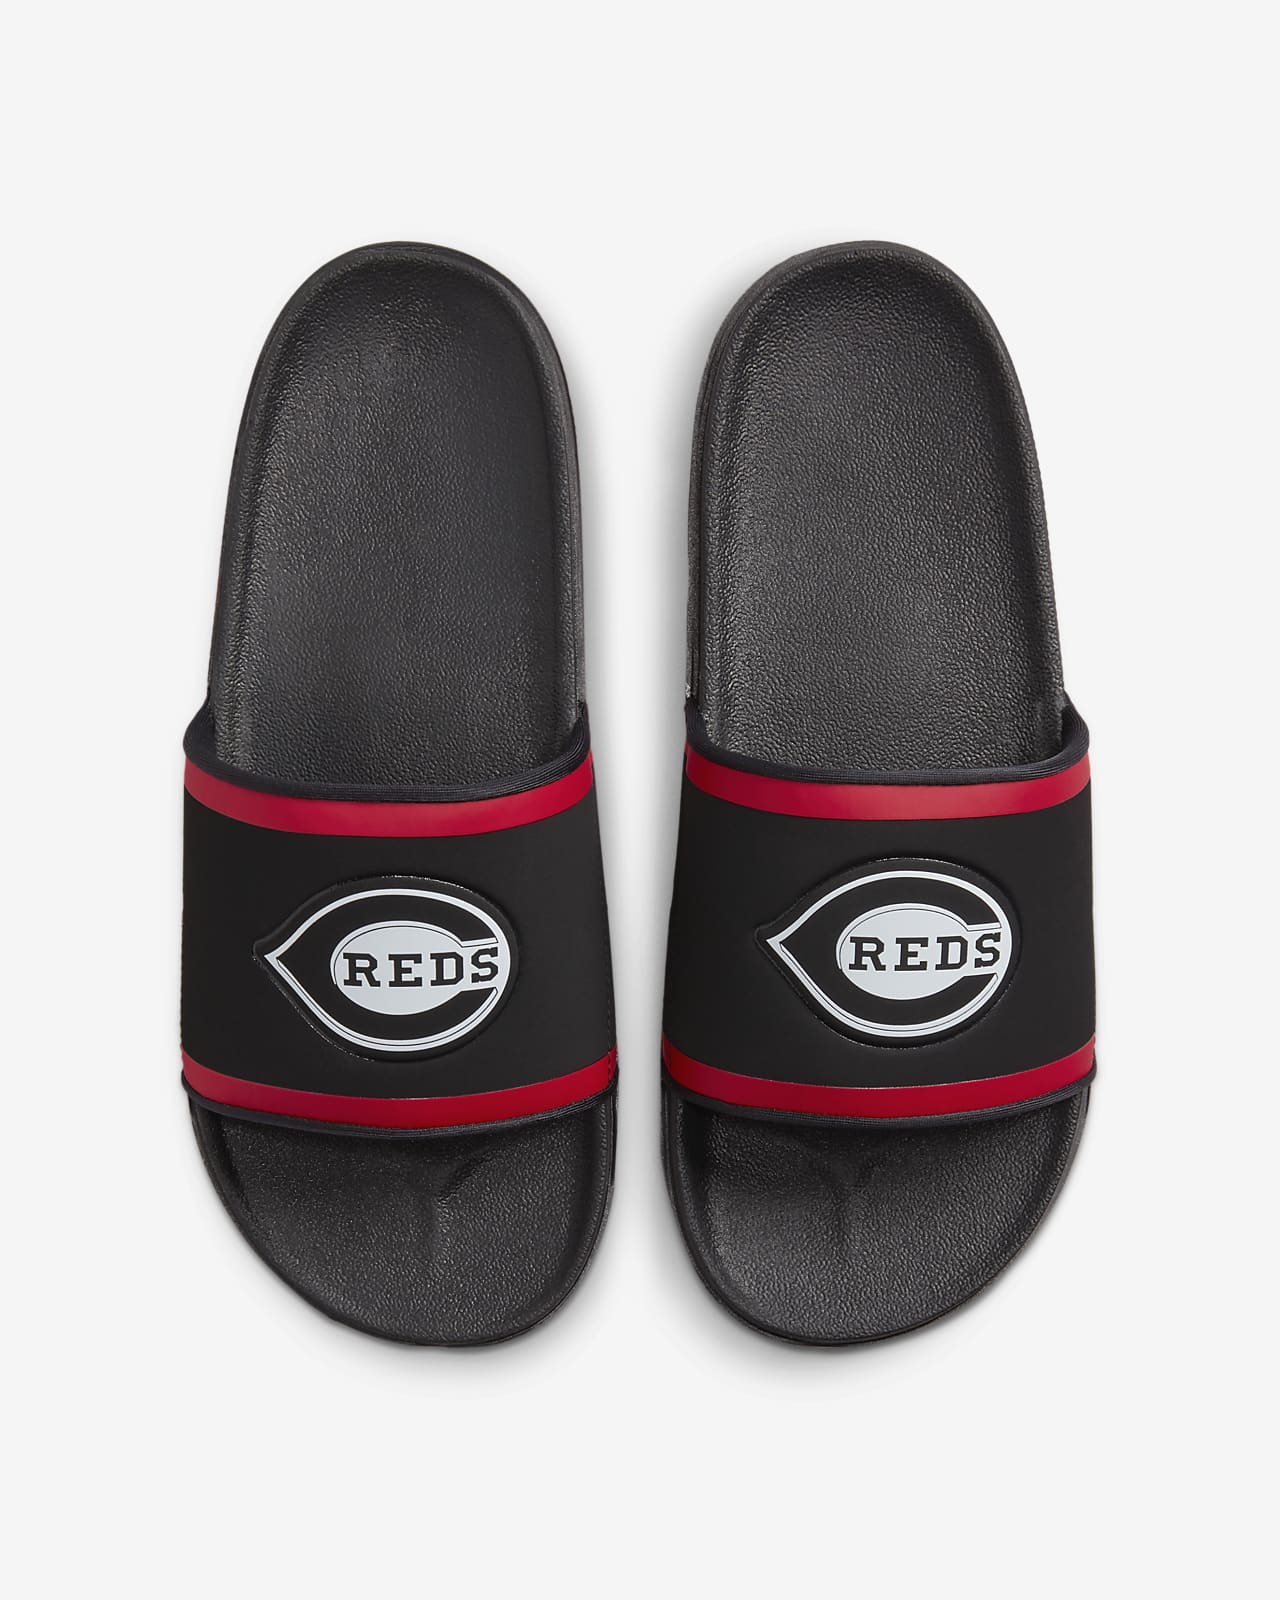 Cincinnati Reds Nike Shoes, Sneakers, Reds Slides, Socks